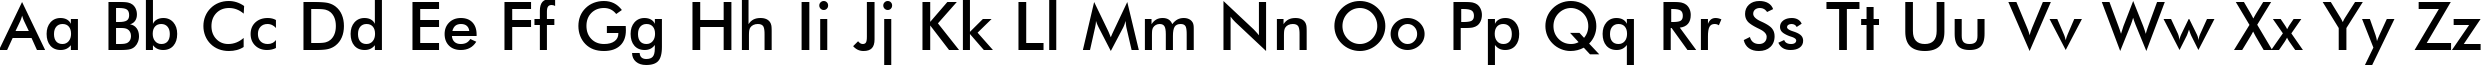 Пример написания английского алфавита шрифтом Futura Medium BT